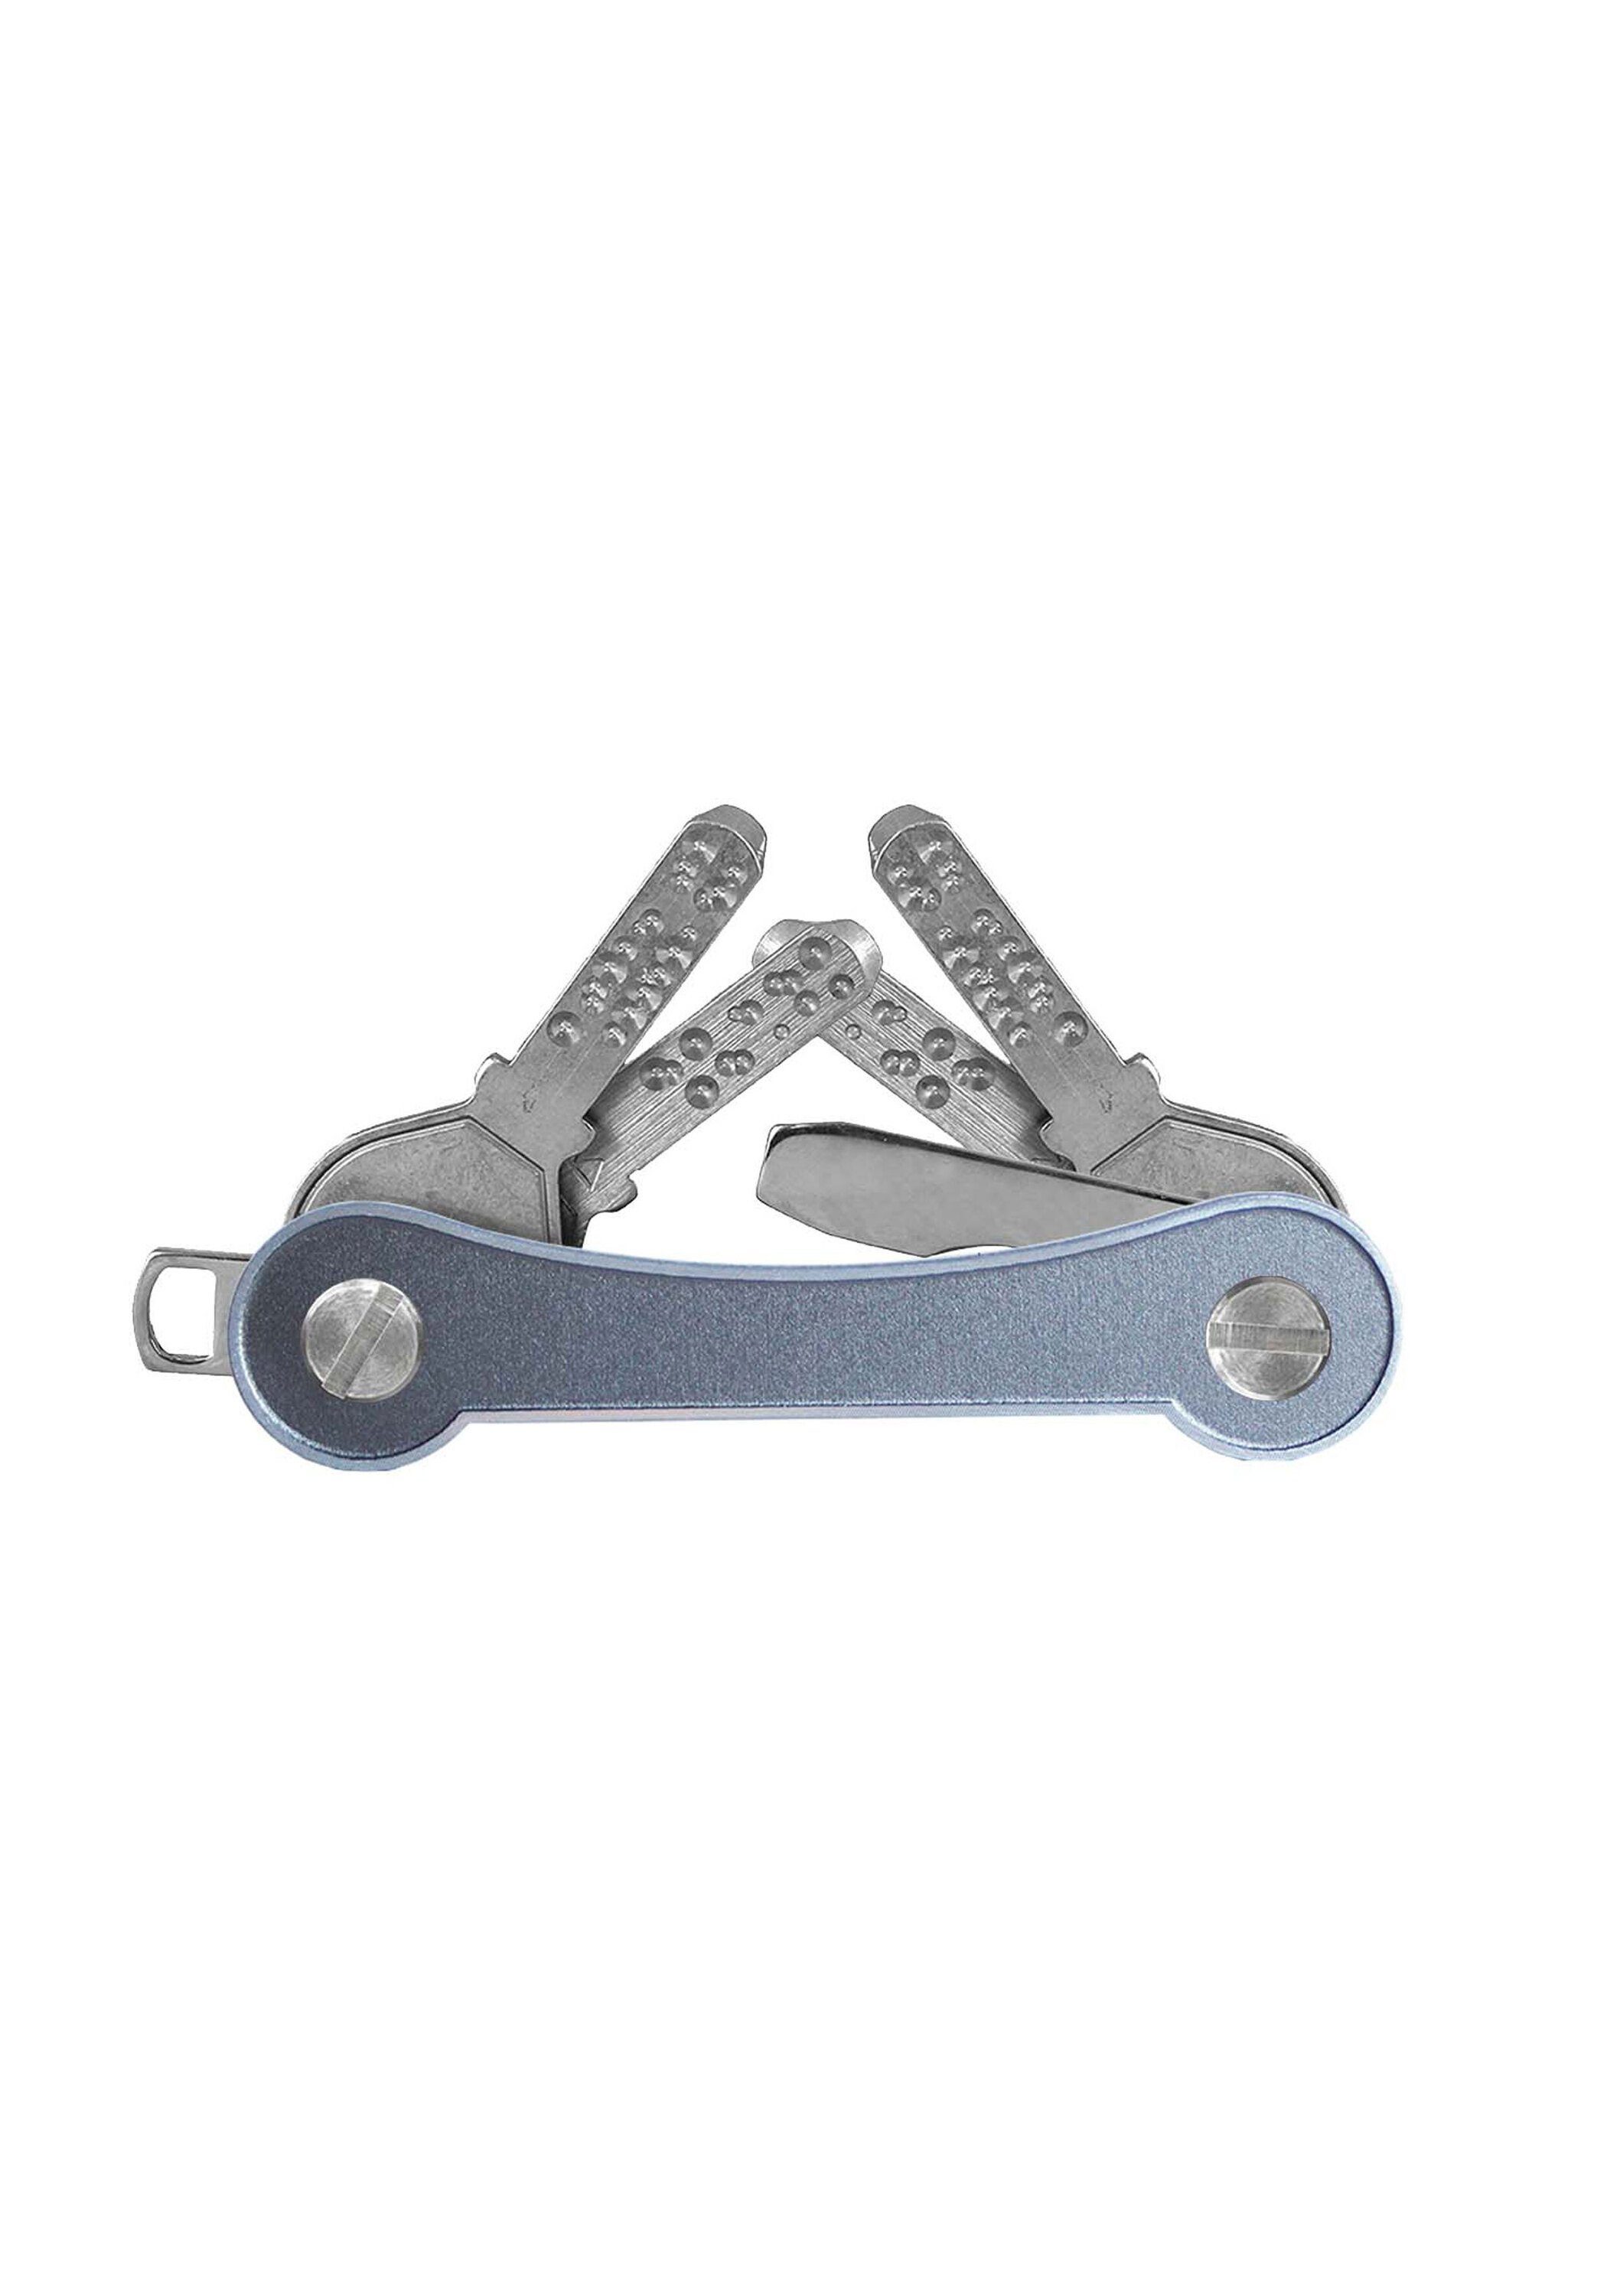 Aluminium Schlüsselanhänger grau frame, Made SWISS keycabins